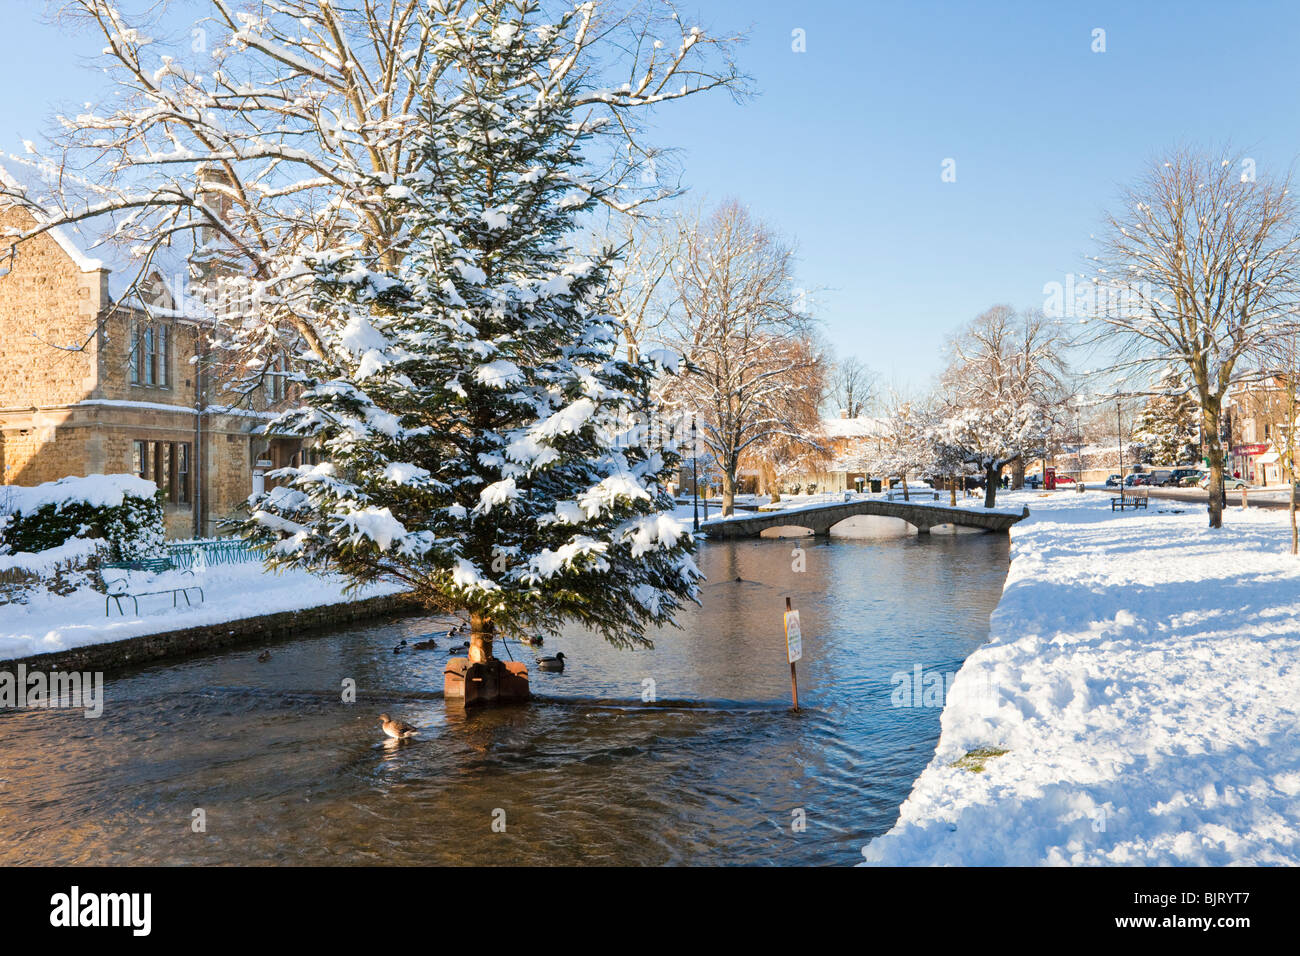 Neige d'hiver sur l'arbre de Noël dans la rivière Windrush, dans le village de Bourton on the Water, dans les Cotswolds, Gloucestershire, Royaume-Uni Banque D'Images